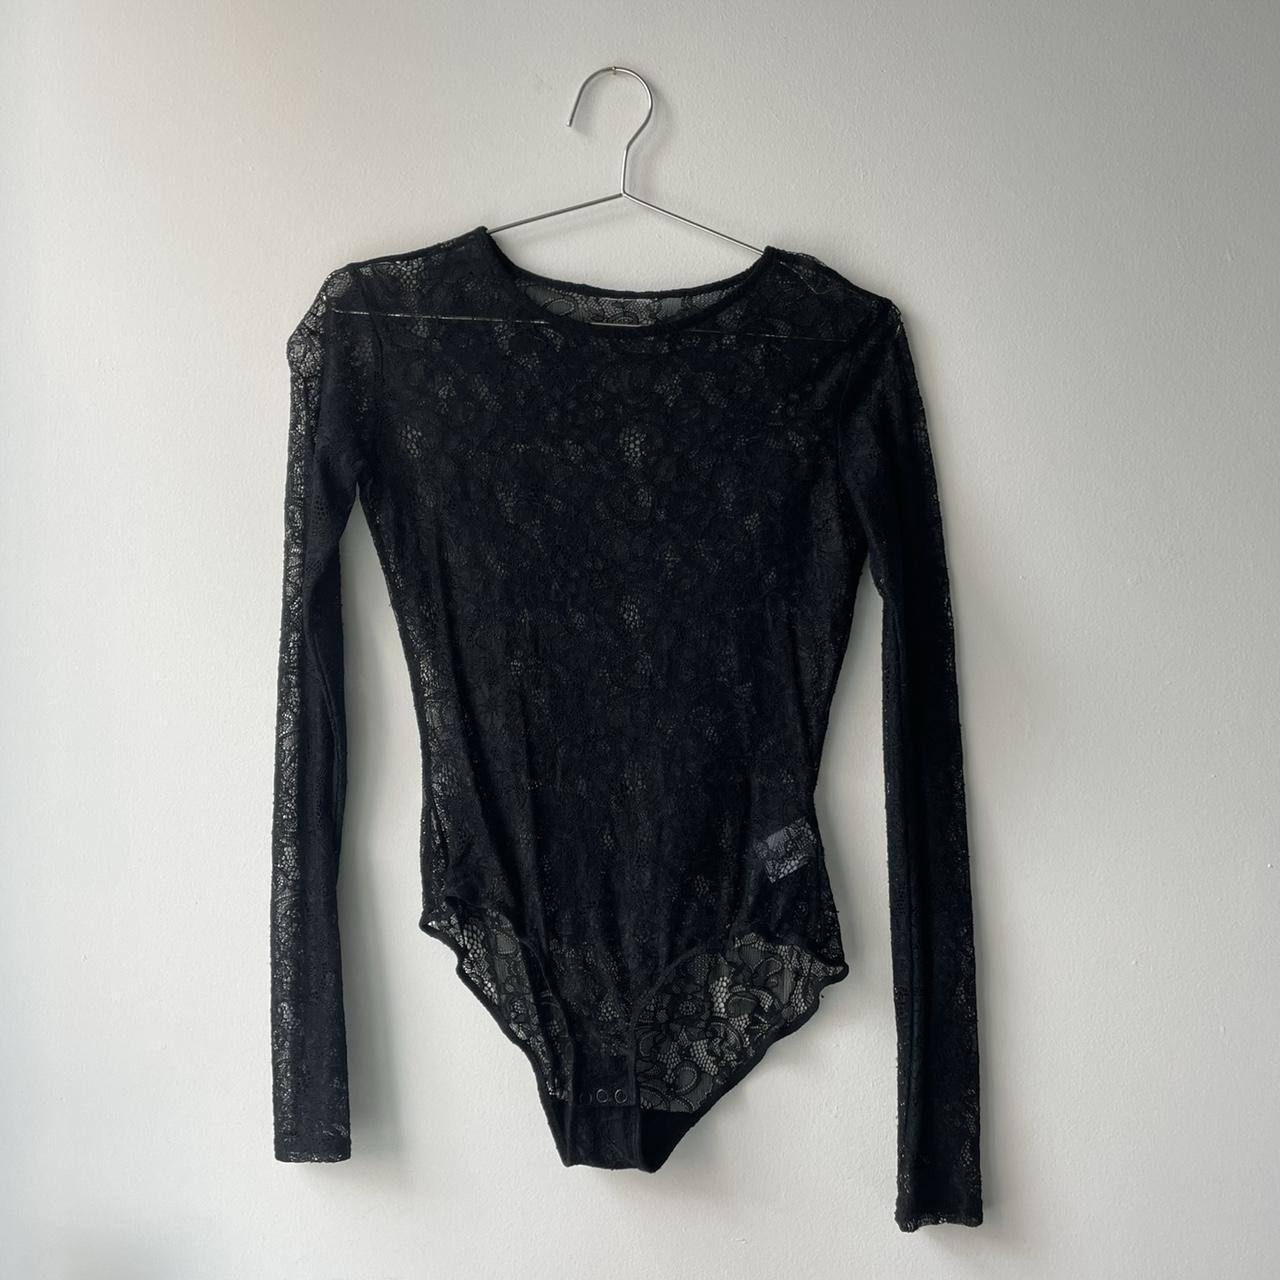 black lace bodysuit 🦢 great condition. best fit for... - Depop